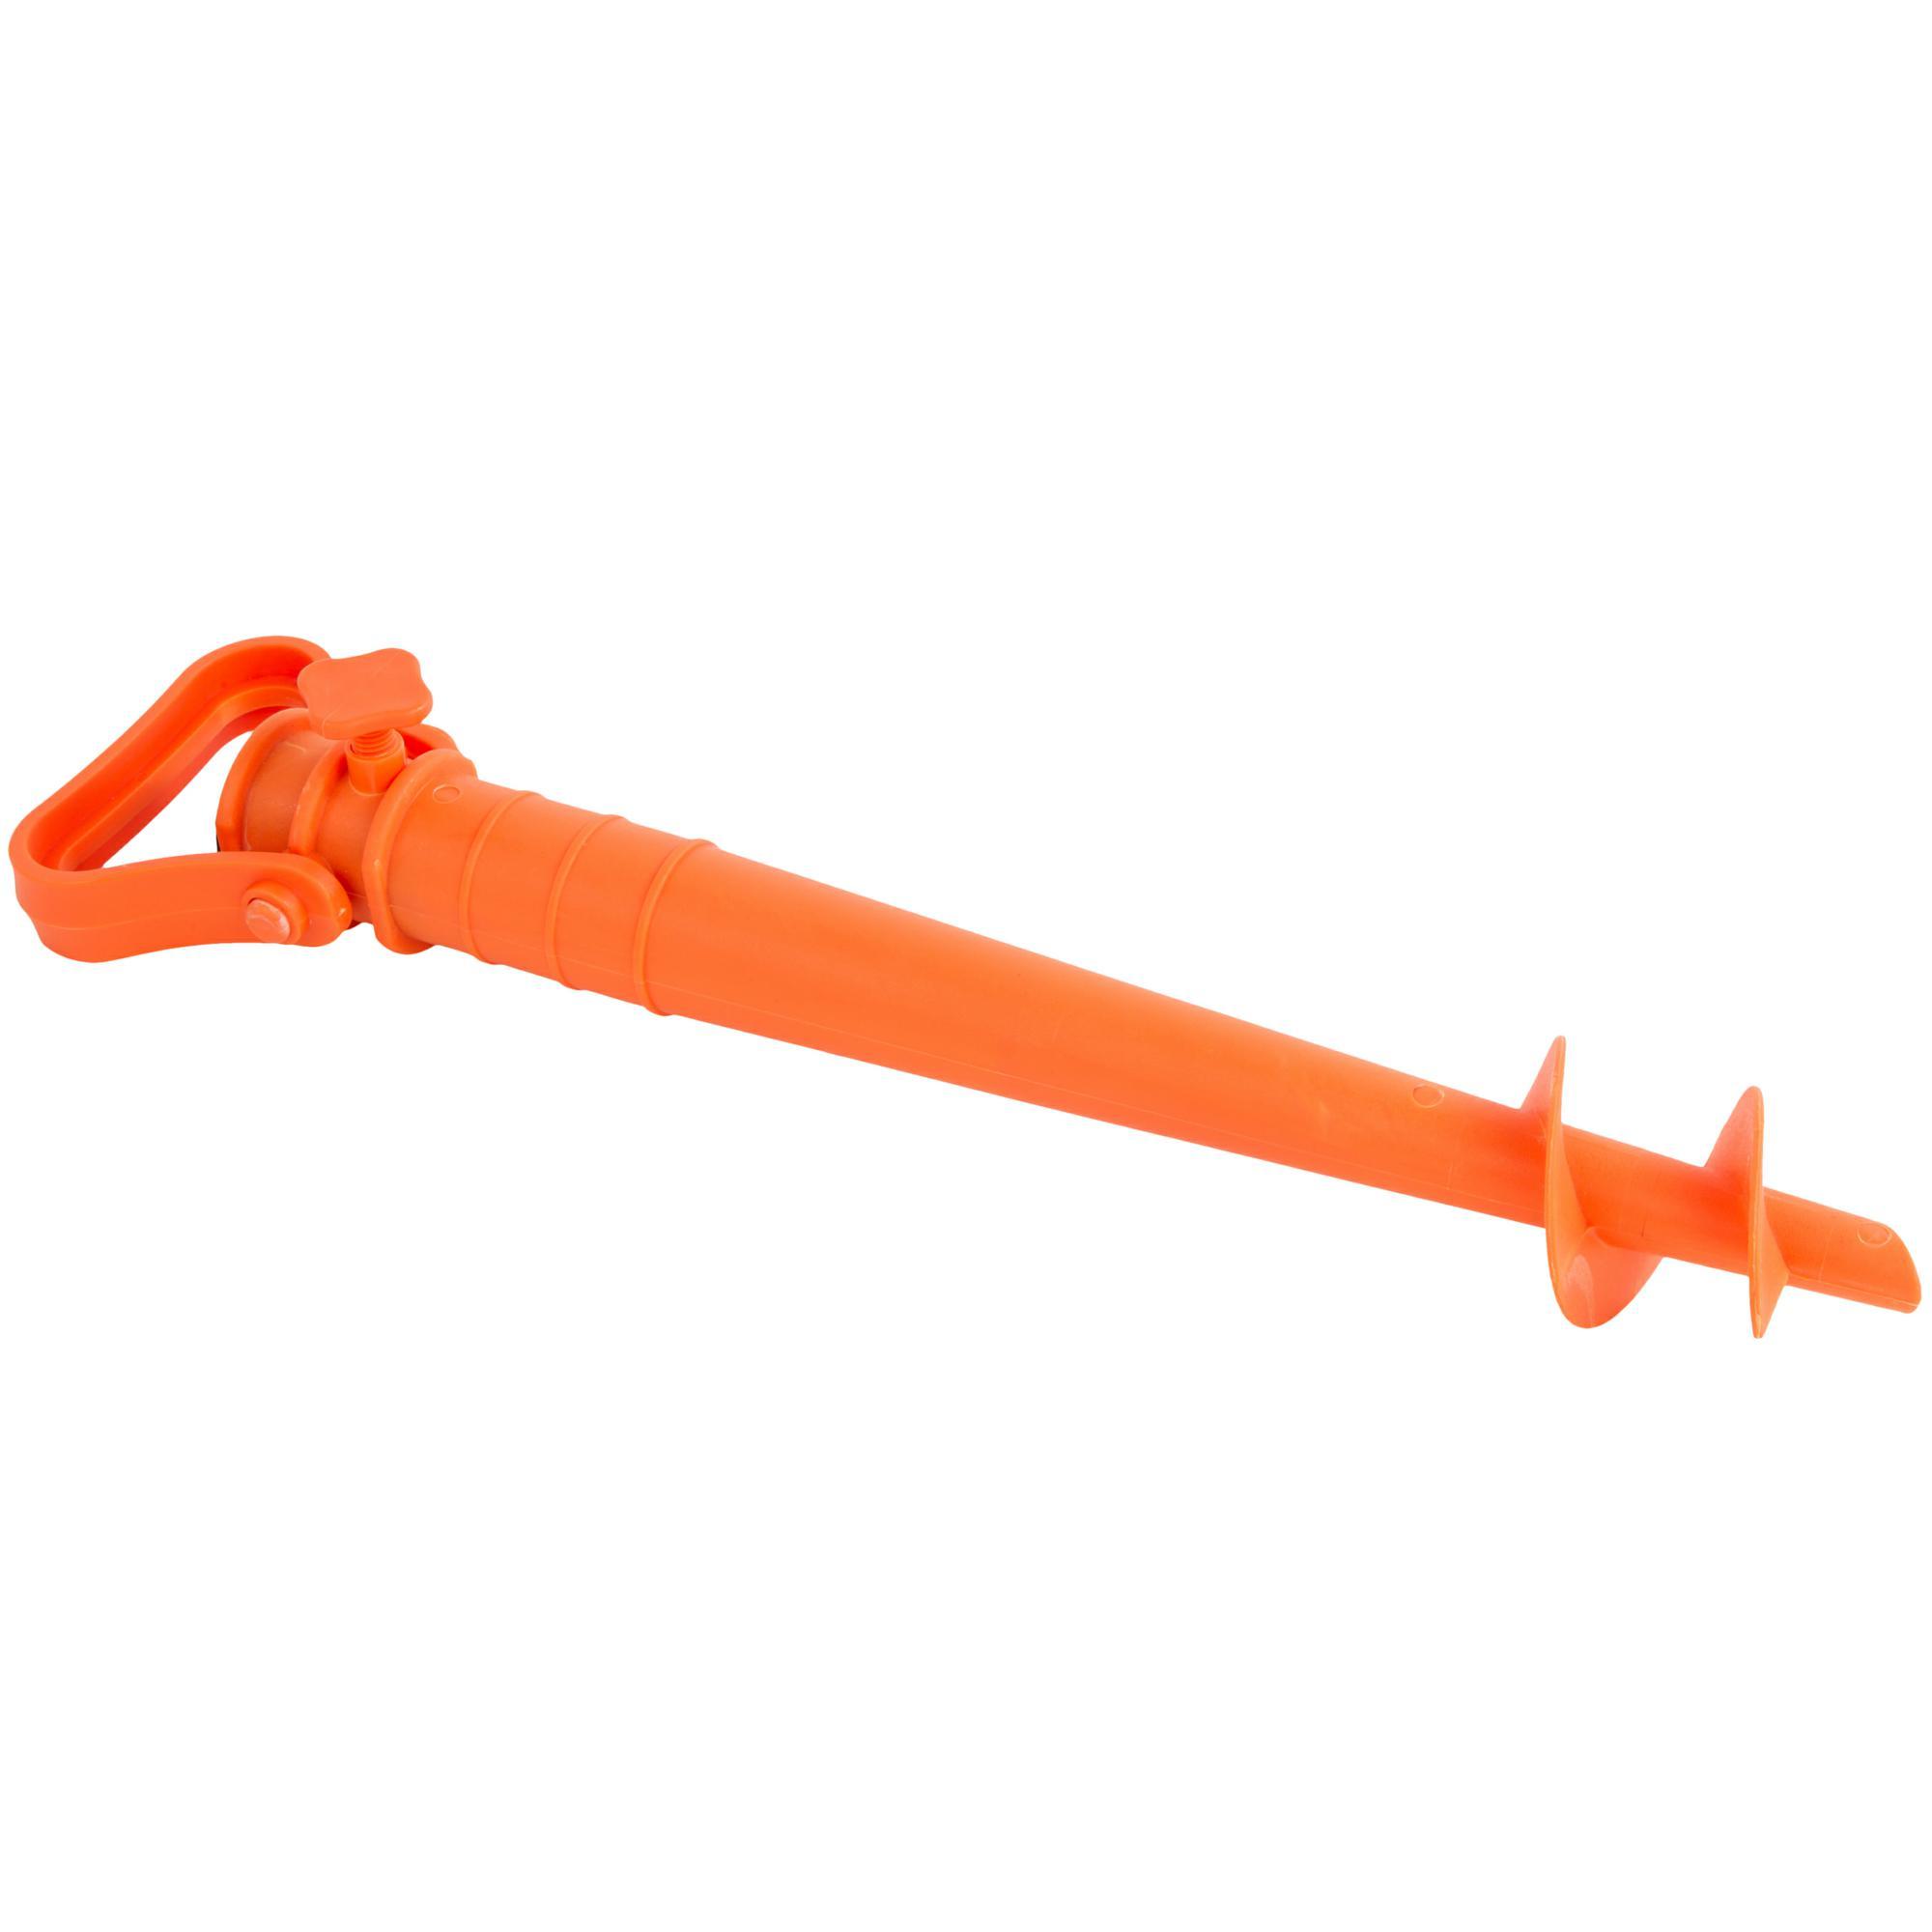 Suport umbrelă fix PARASOL portocaliu decathlon.ro  Tricouri protectie UV. topuri termice